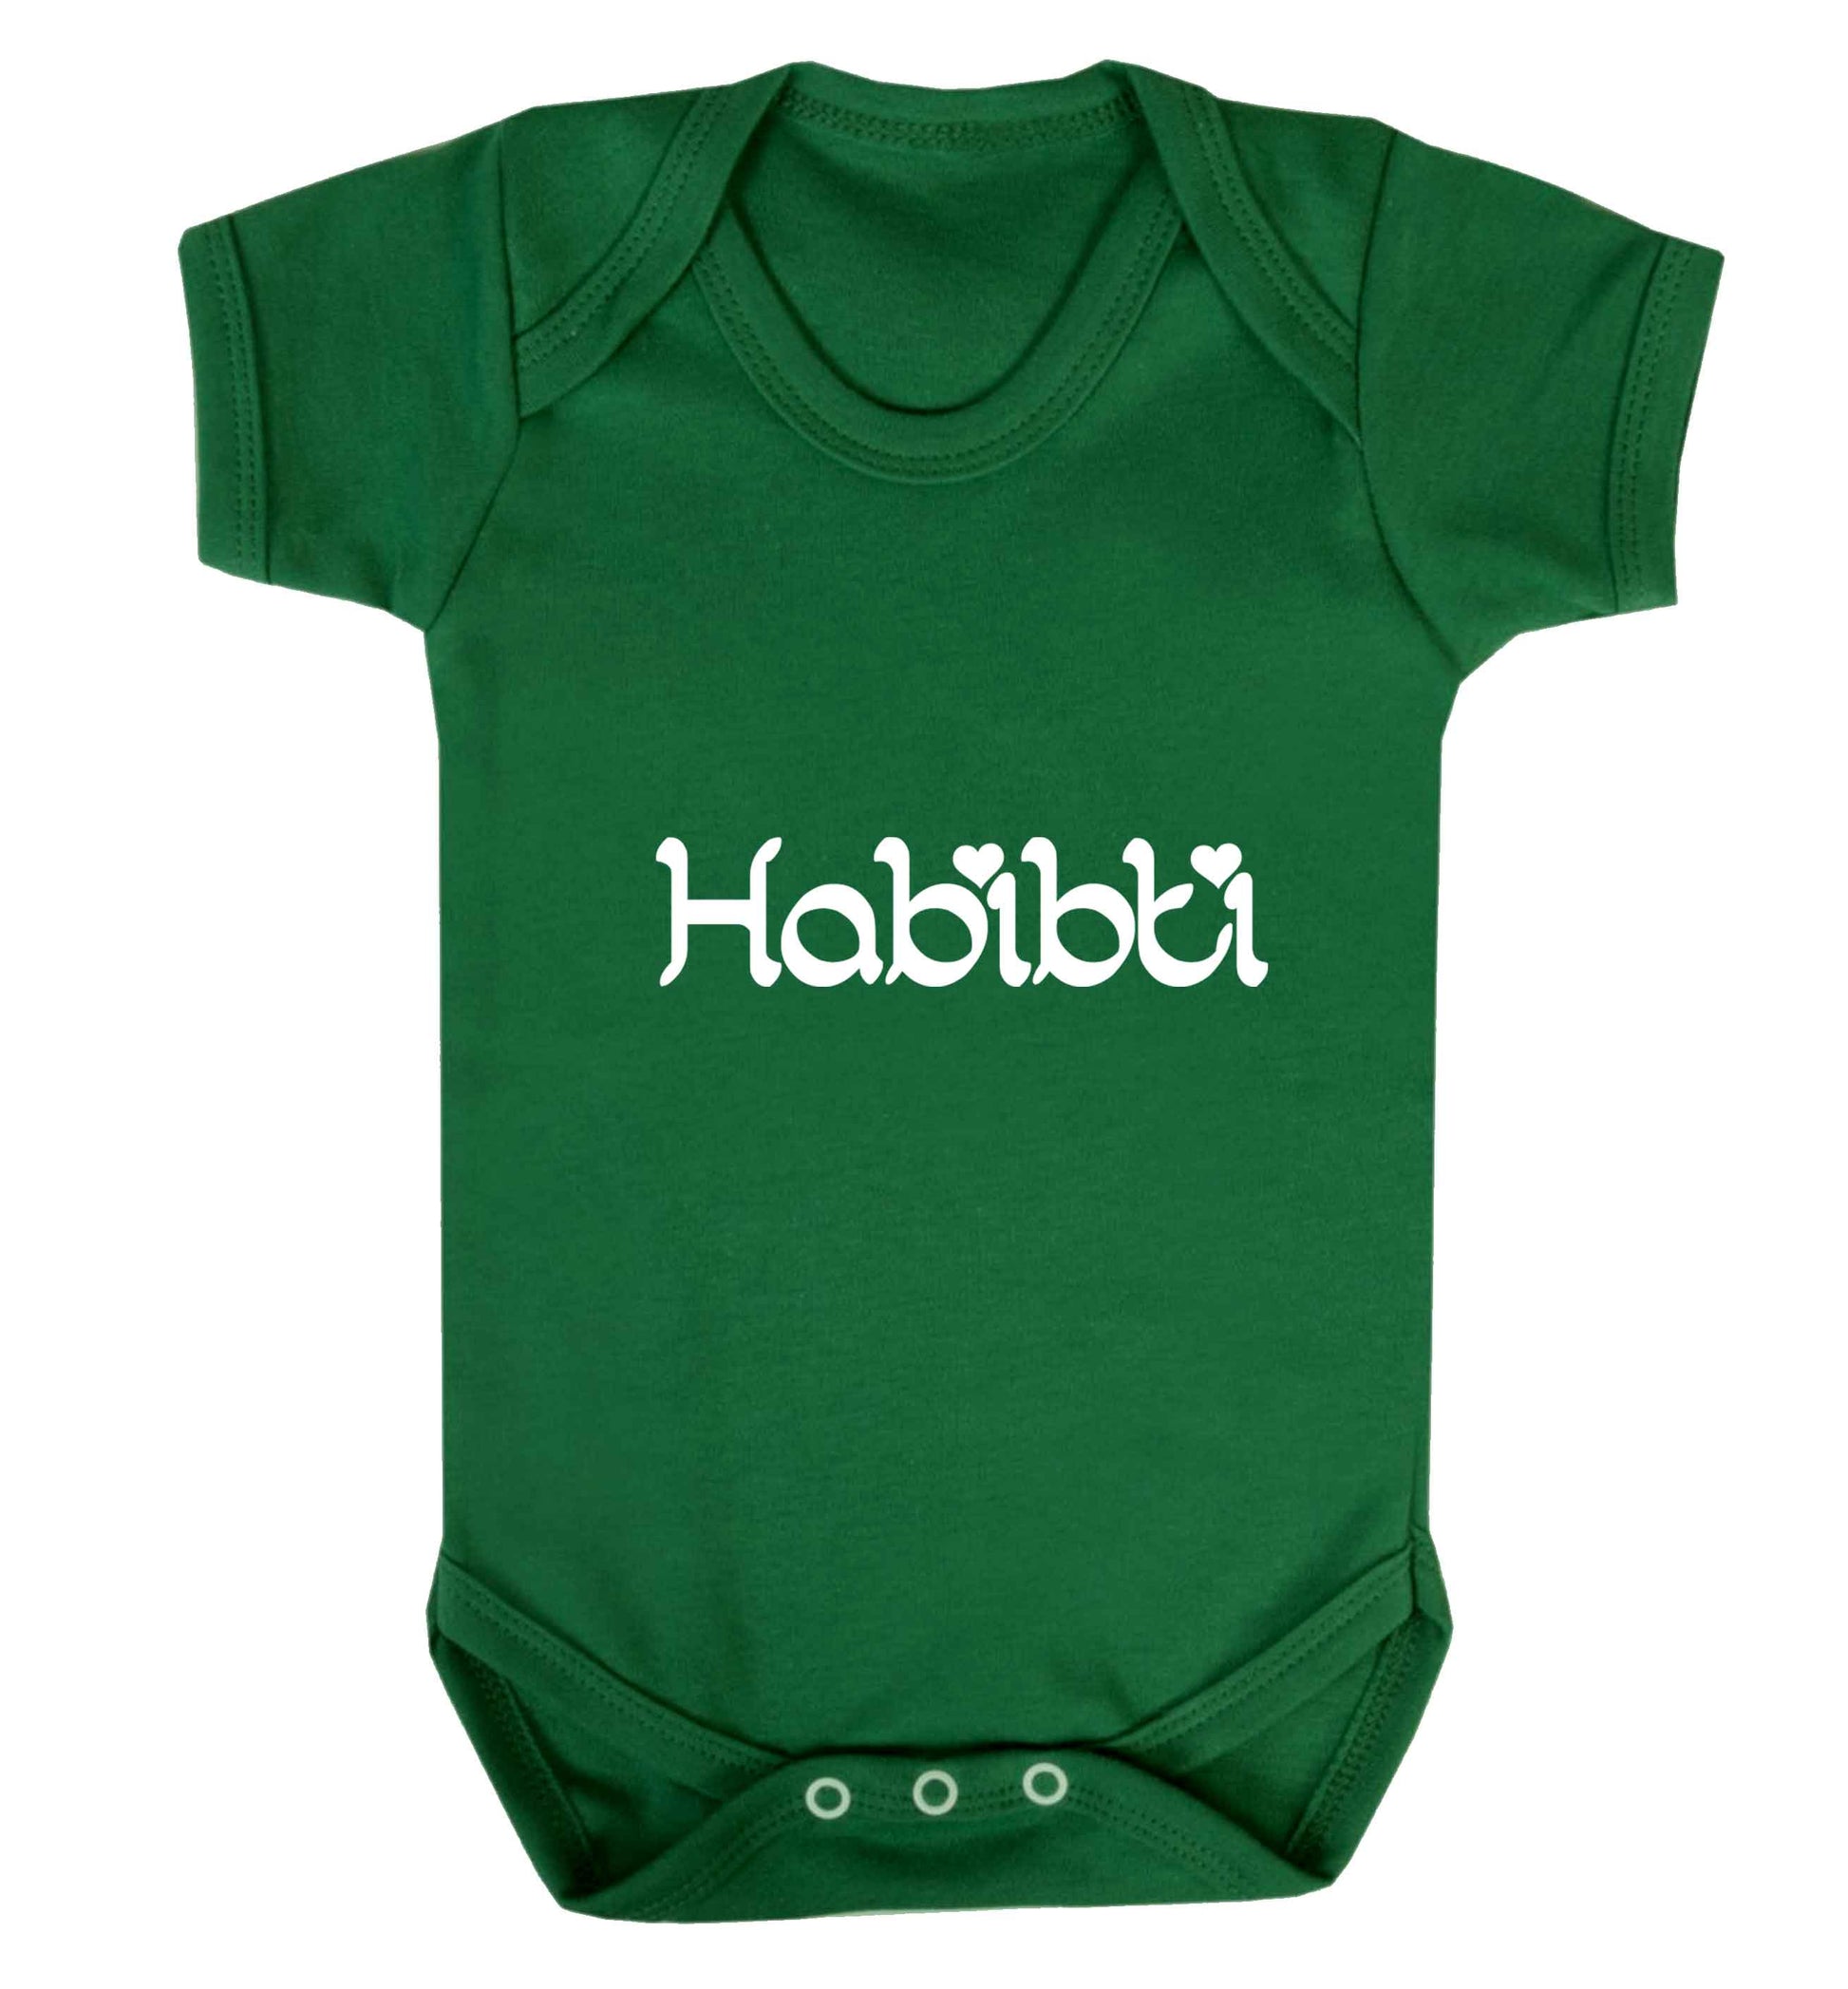 Habibiti baby vest green 18-24 months